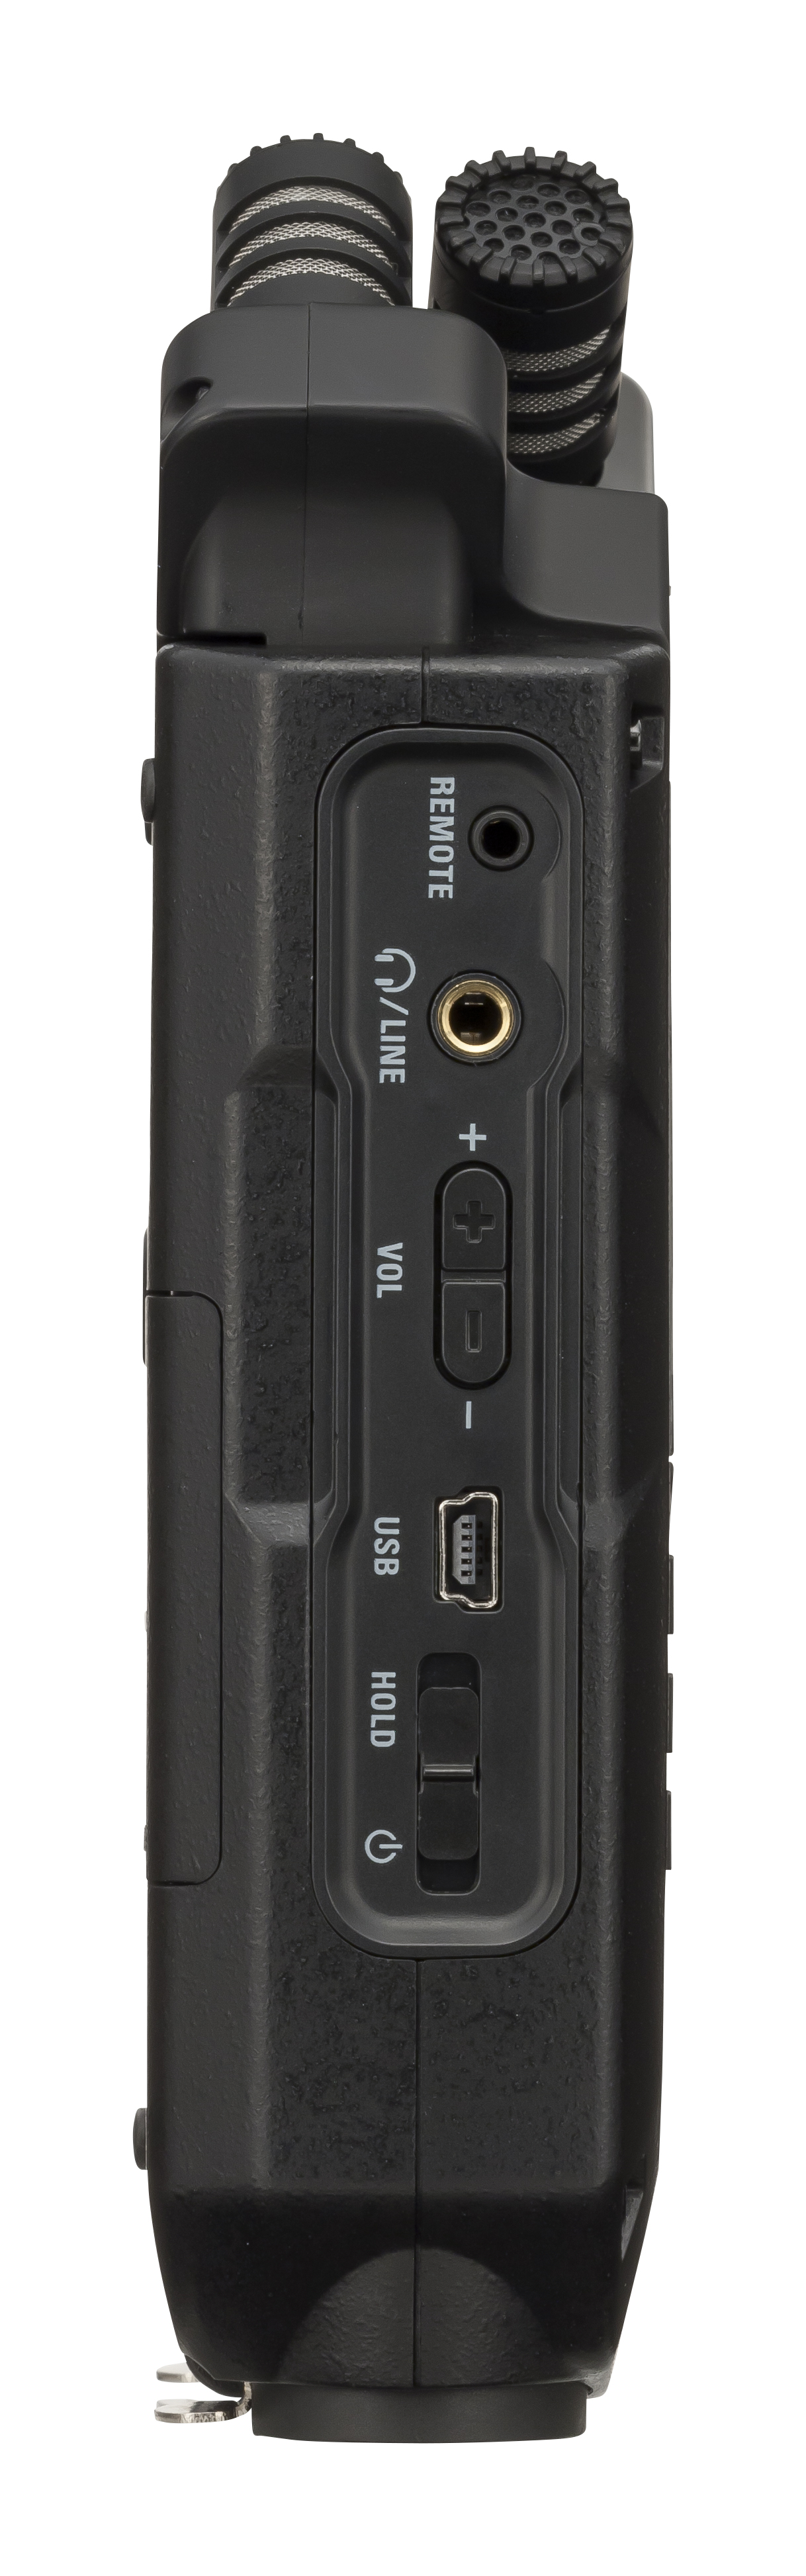 Zoom H4n Pro Black - Mobiele opnemer - Variation 3